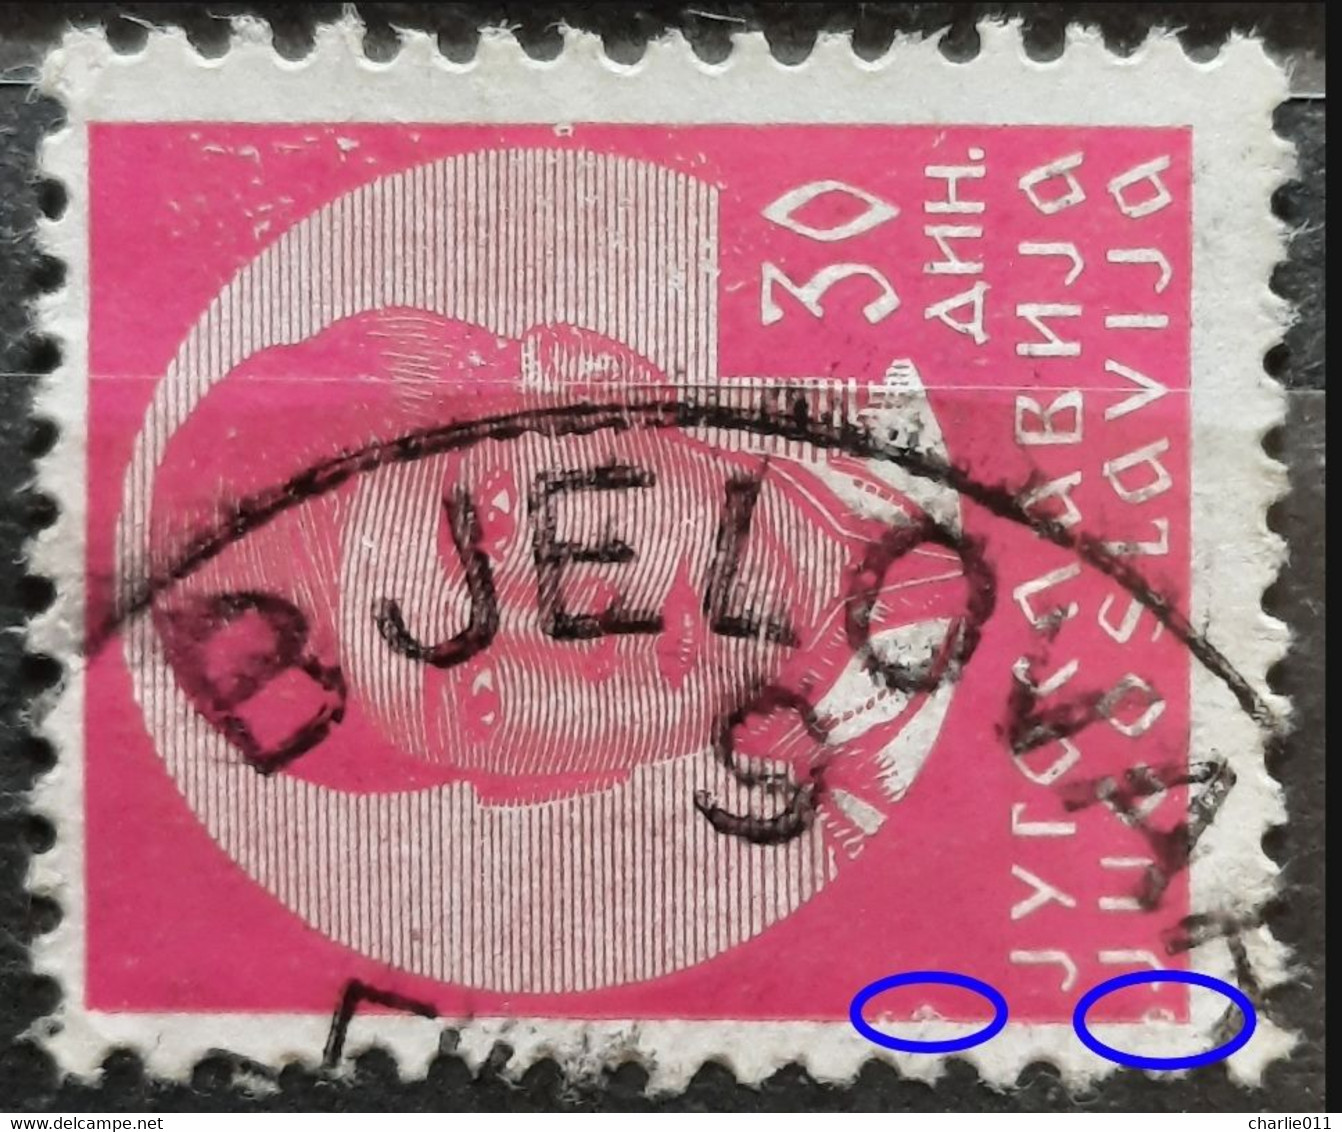 KING PETER II-30 D-POSTMARK BJELOVAR-ERROR-CROATIA-YUGOSLAVIA-1935 - Geschnittene, Druckproben Und Abarten